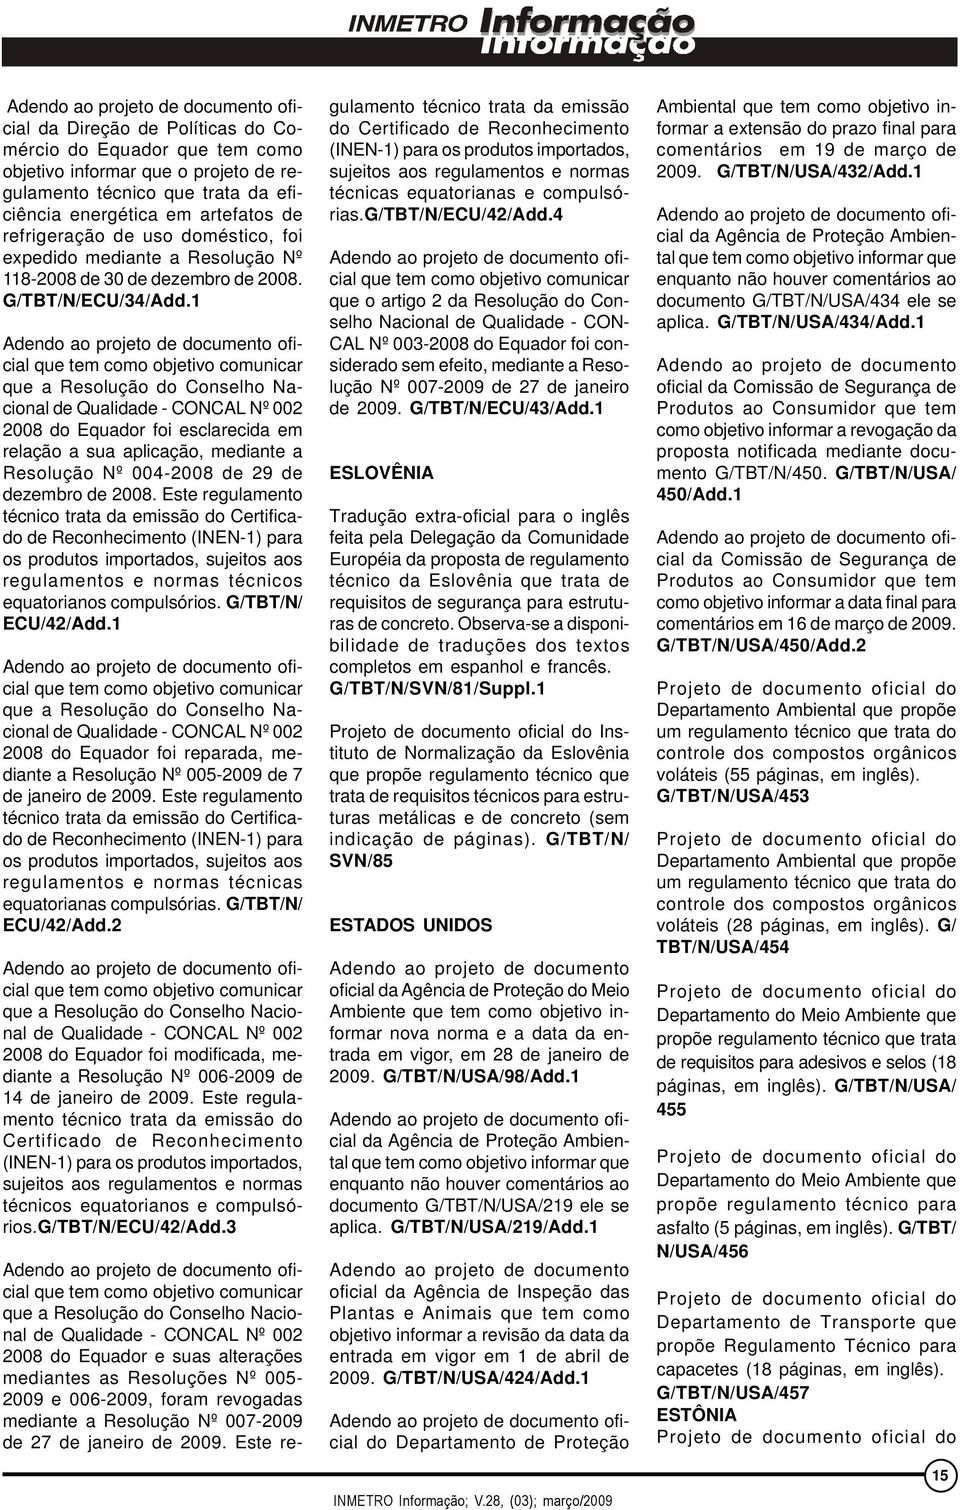 1 Adendo ao projeto de documento oficial que tem como objetivo comunicar que a Resolução do Conselho Nacional de Qualidade - CONCAL Nº 002 2008 do Equador foi esclarecida em relação a sua aplicação,